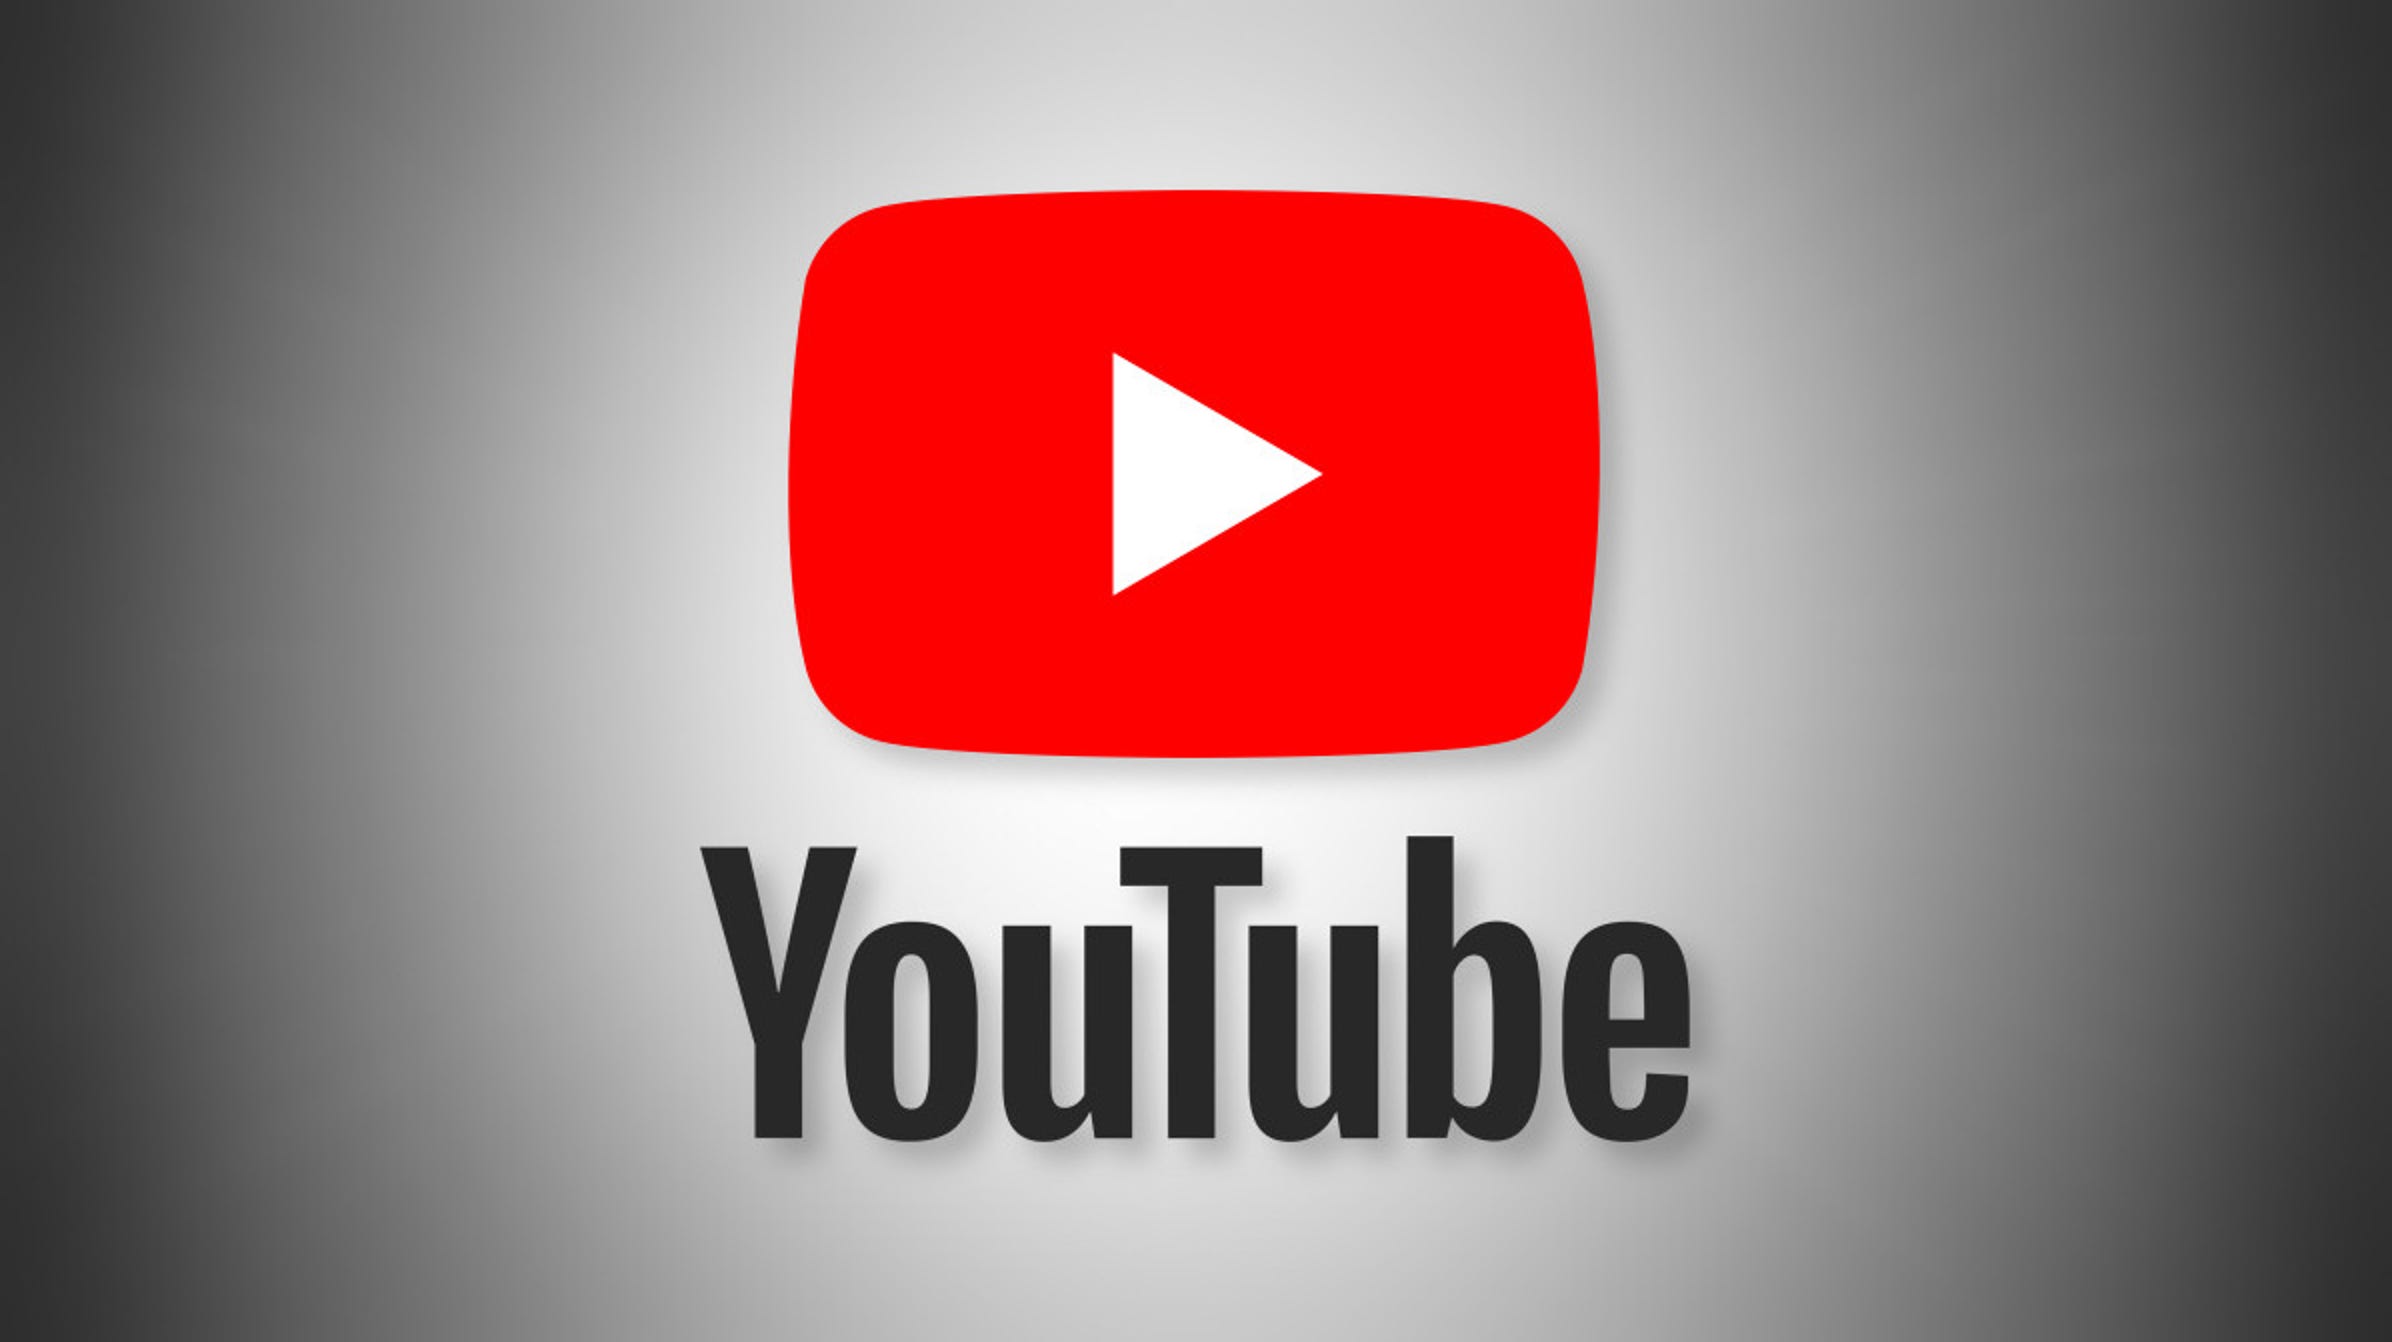 Canta la canción: YouTube prueba su análogo de Shazam